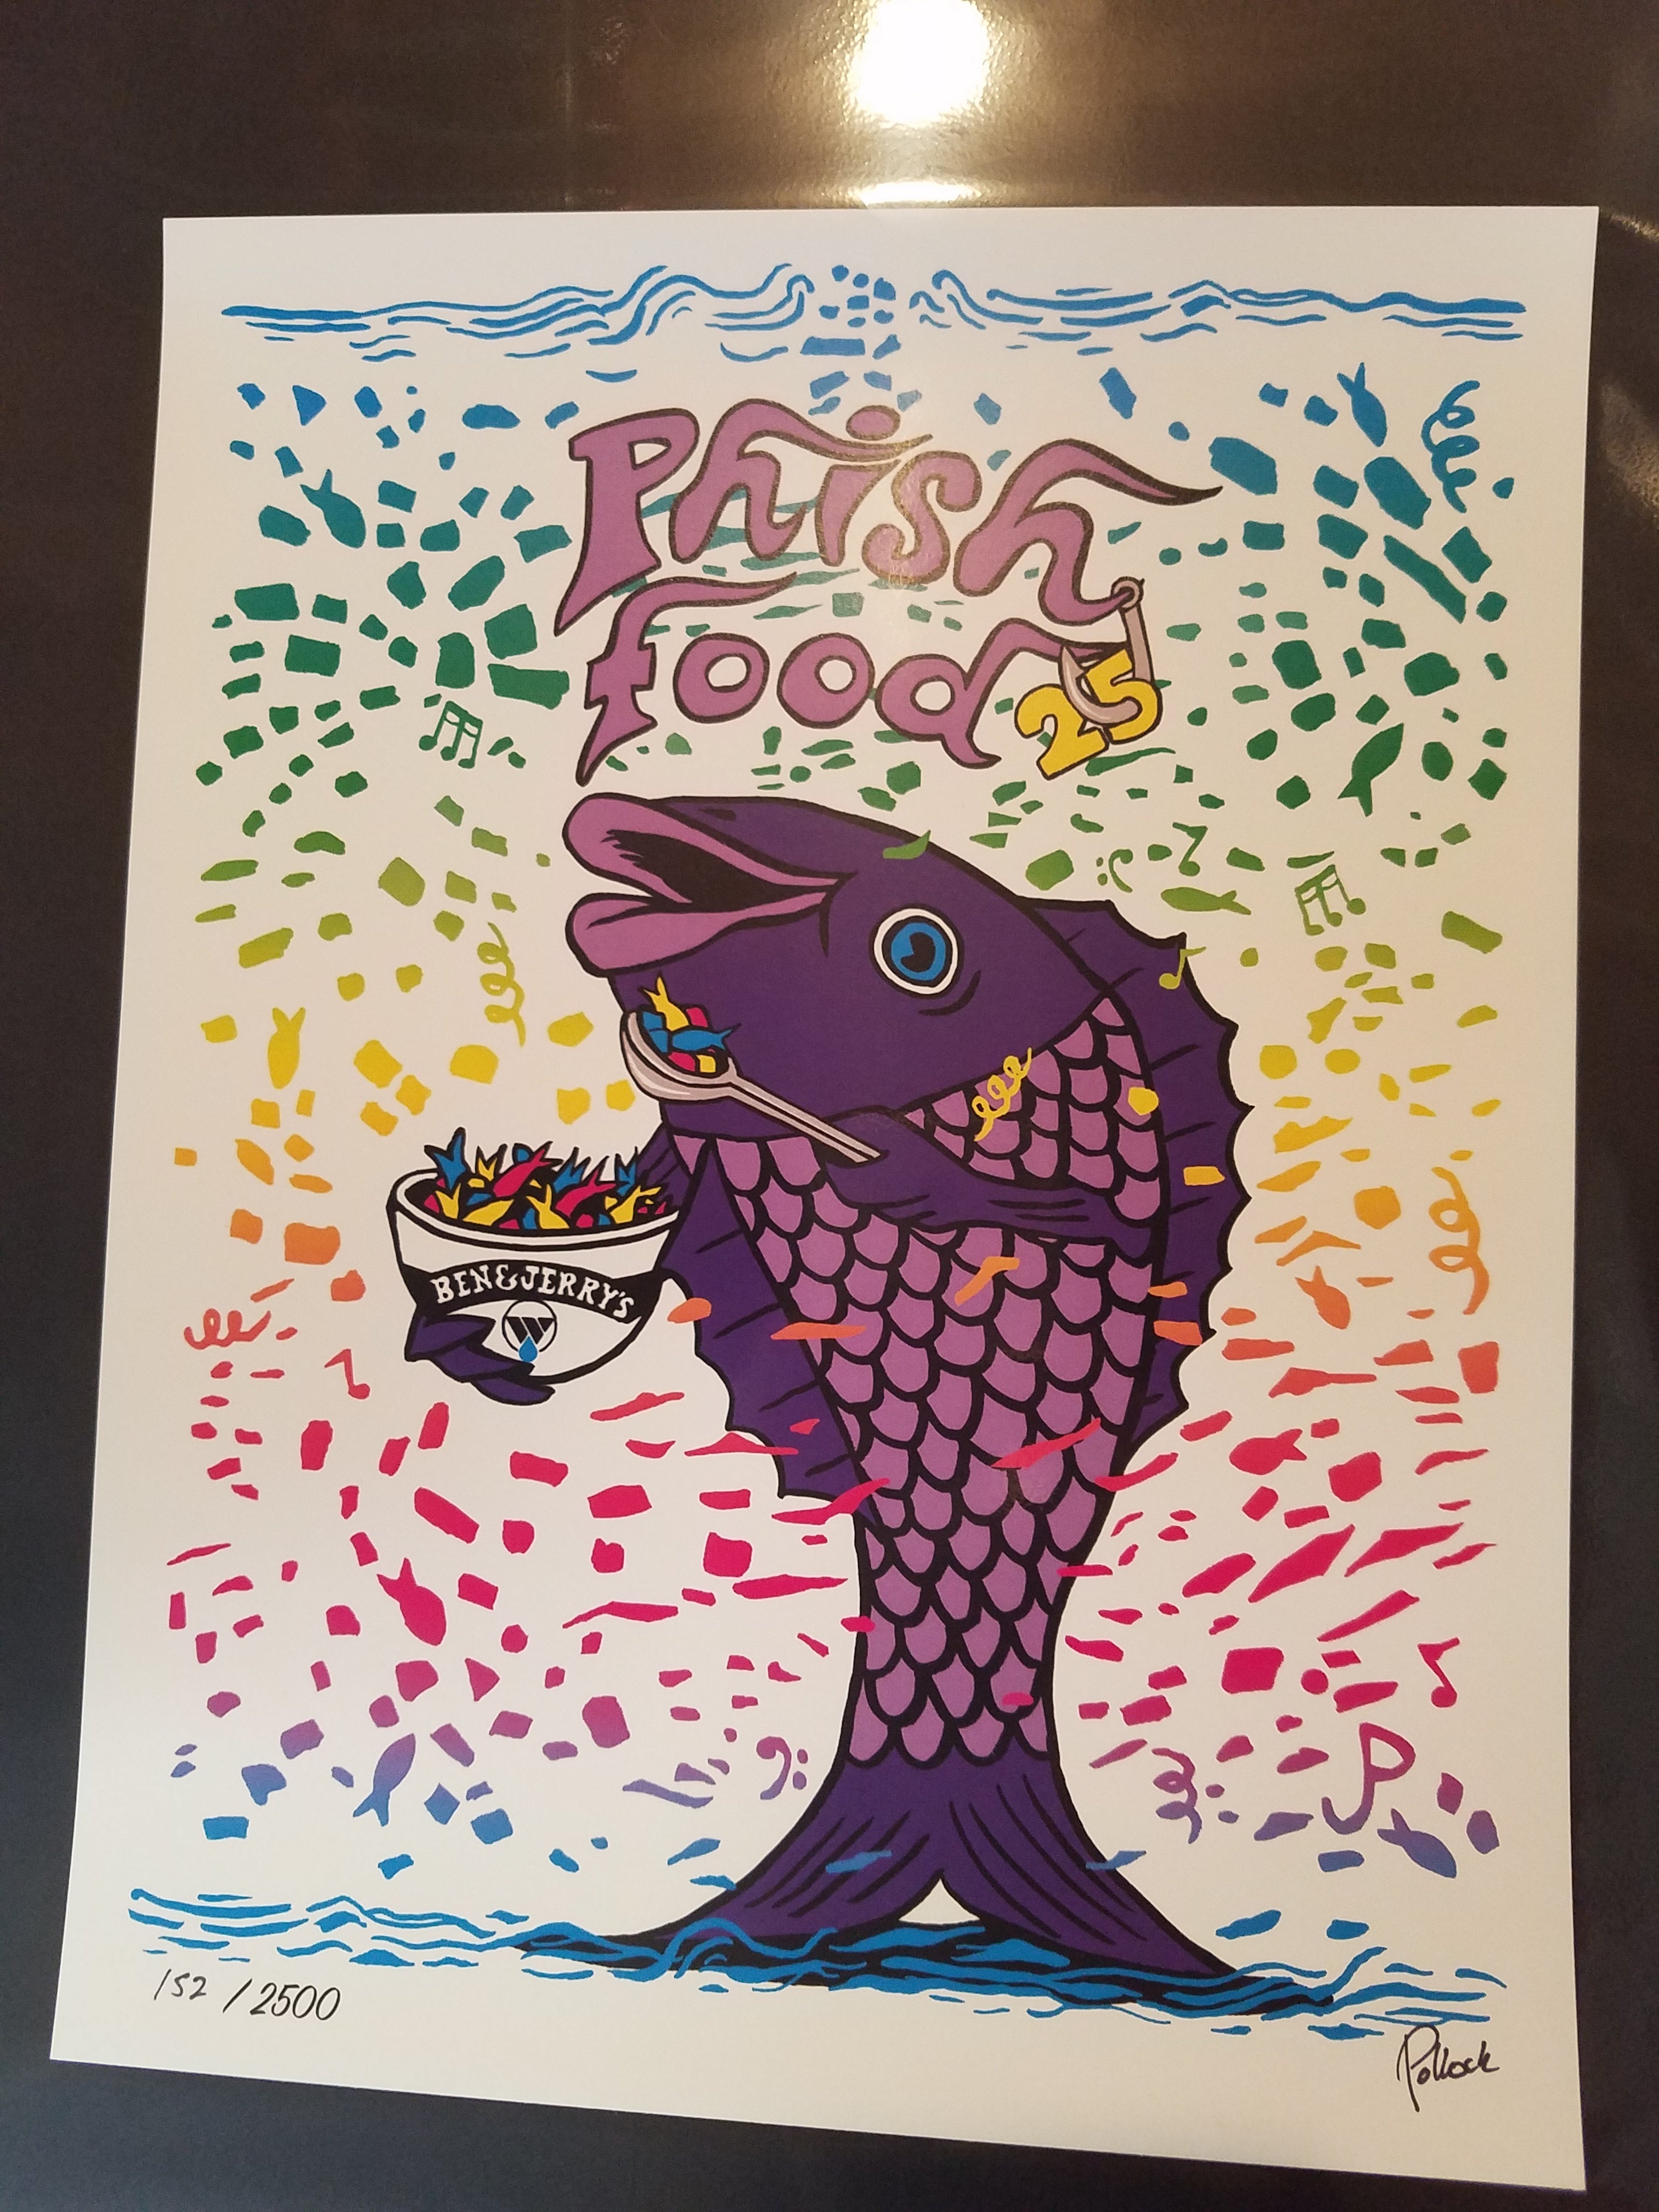 Jim Pollock "Phish Food" Charity Print Set - 2022